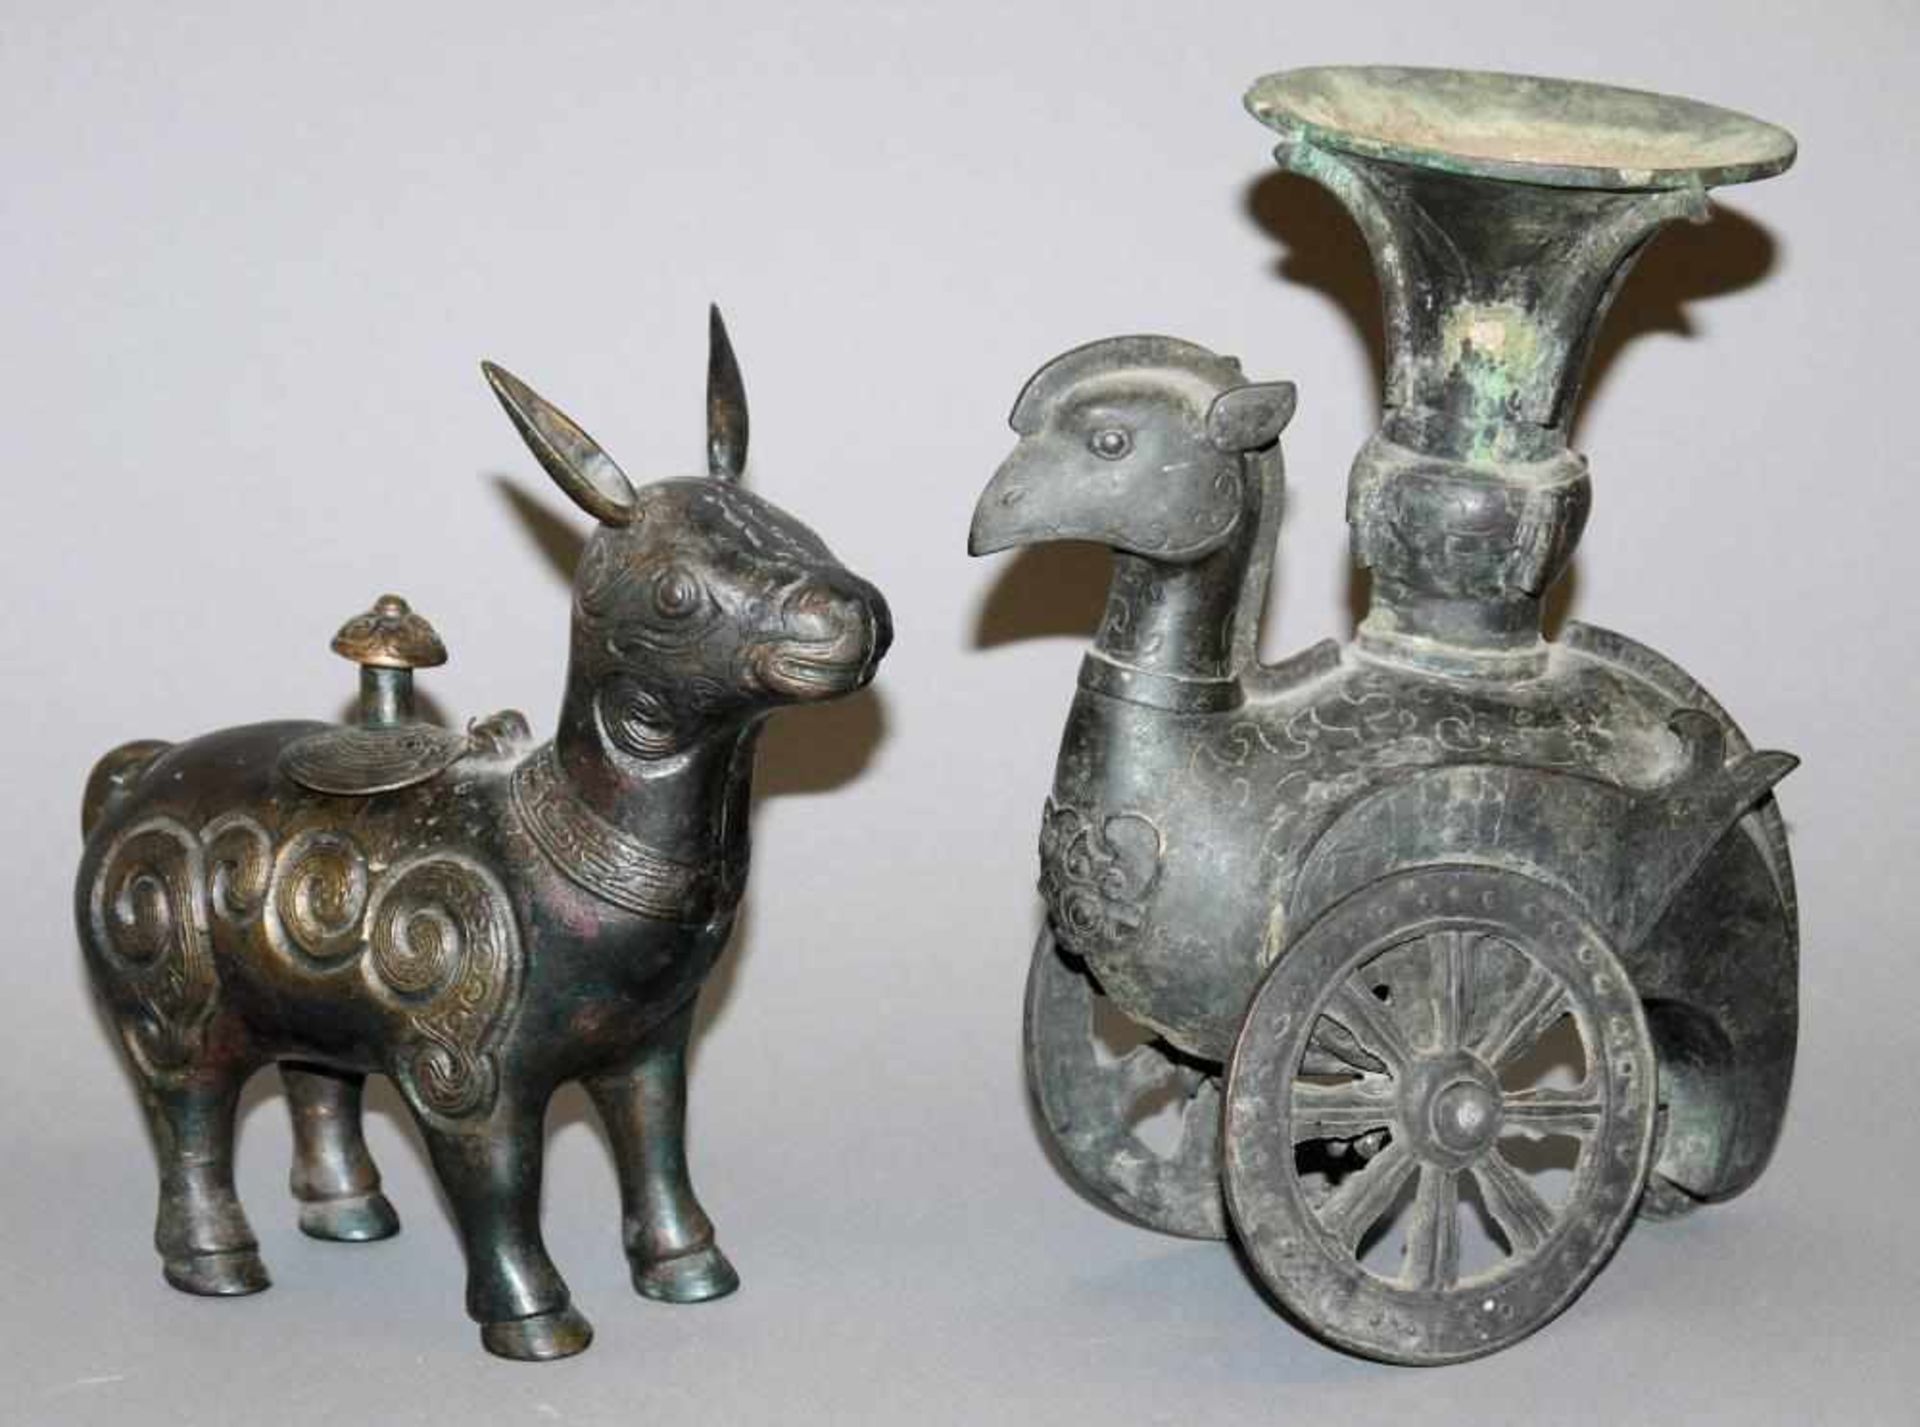 Zwei archaisierende „Zun“, Bronzegefäße in Tierform, späte Qing-Zeit, China 19. Jh. Ursprünglich